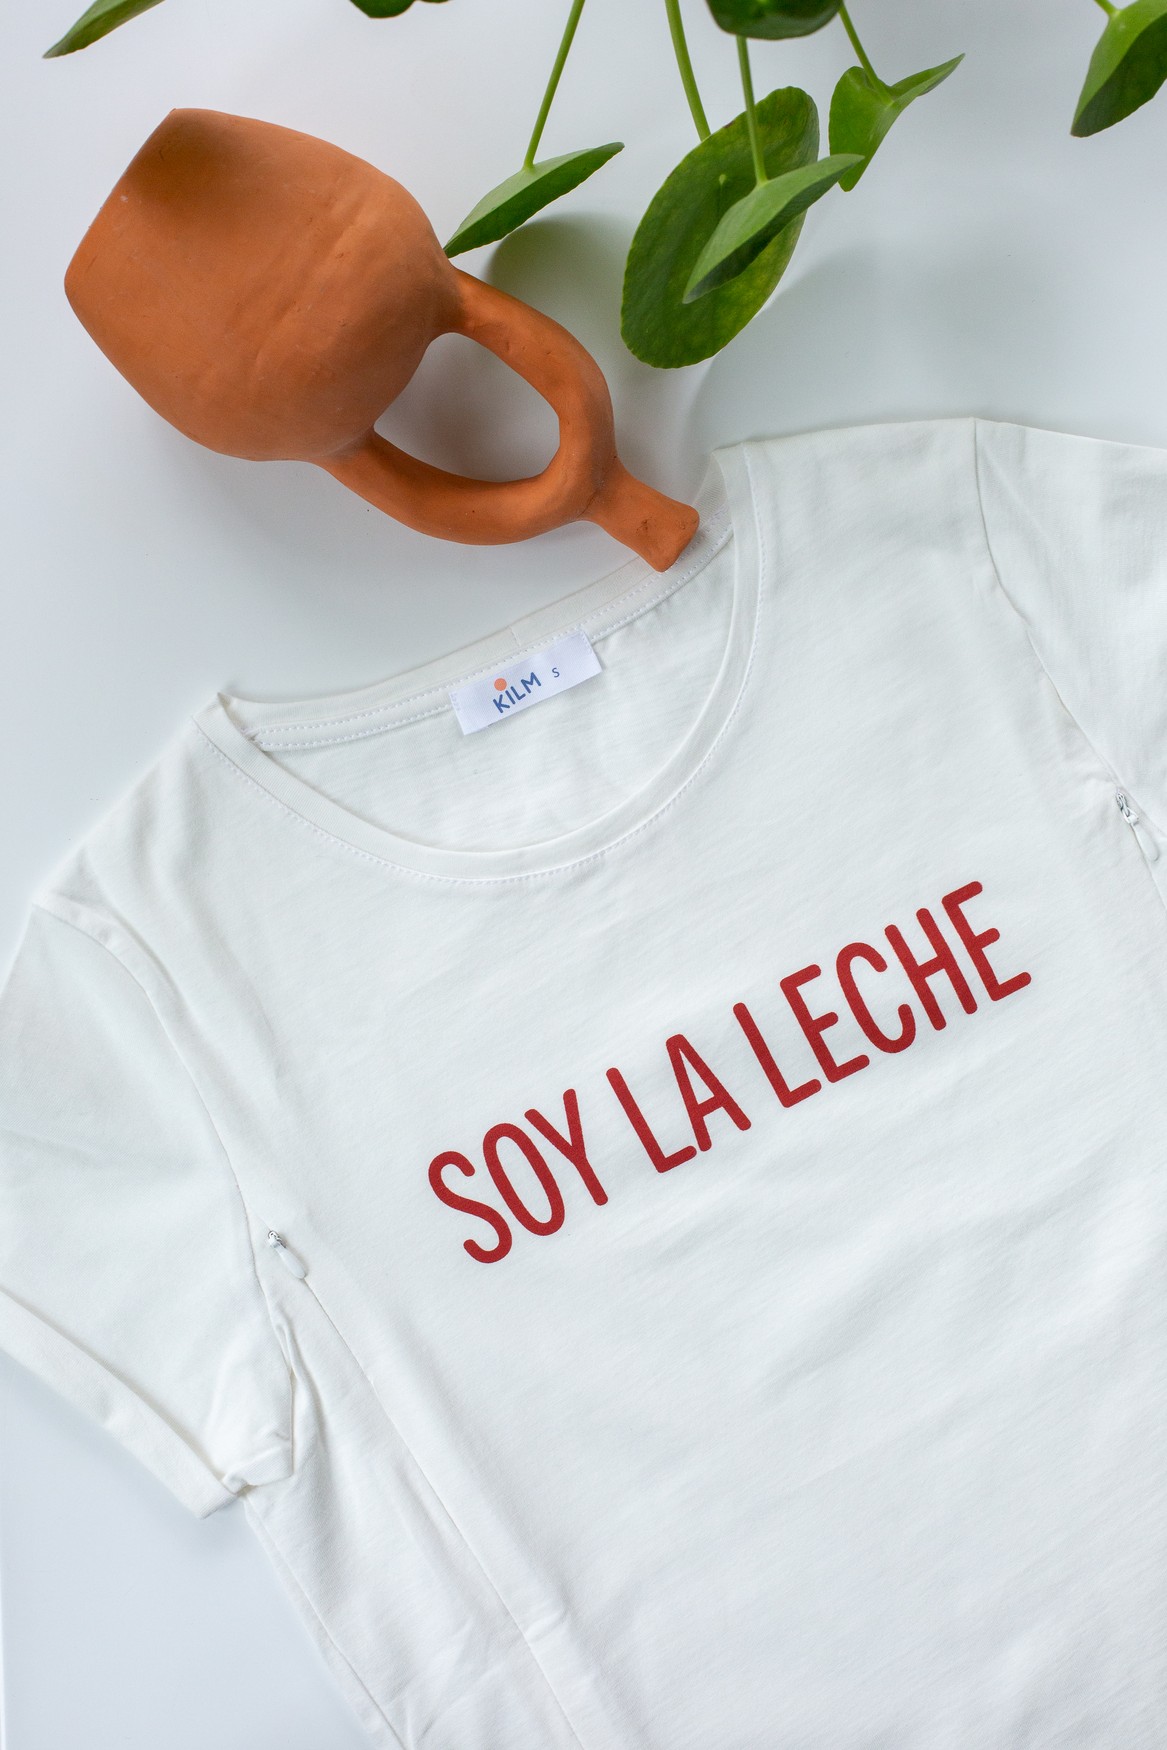 Somos la leche - Camiseta mamás – Itepa